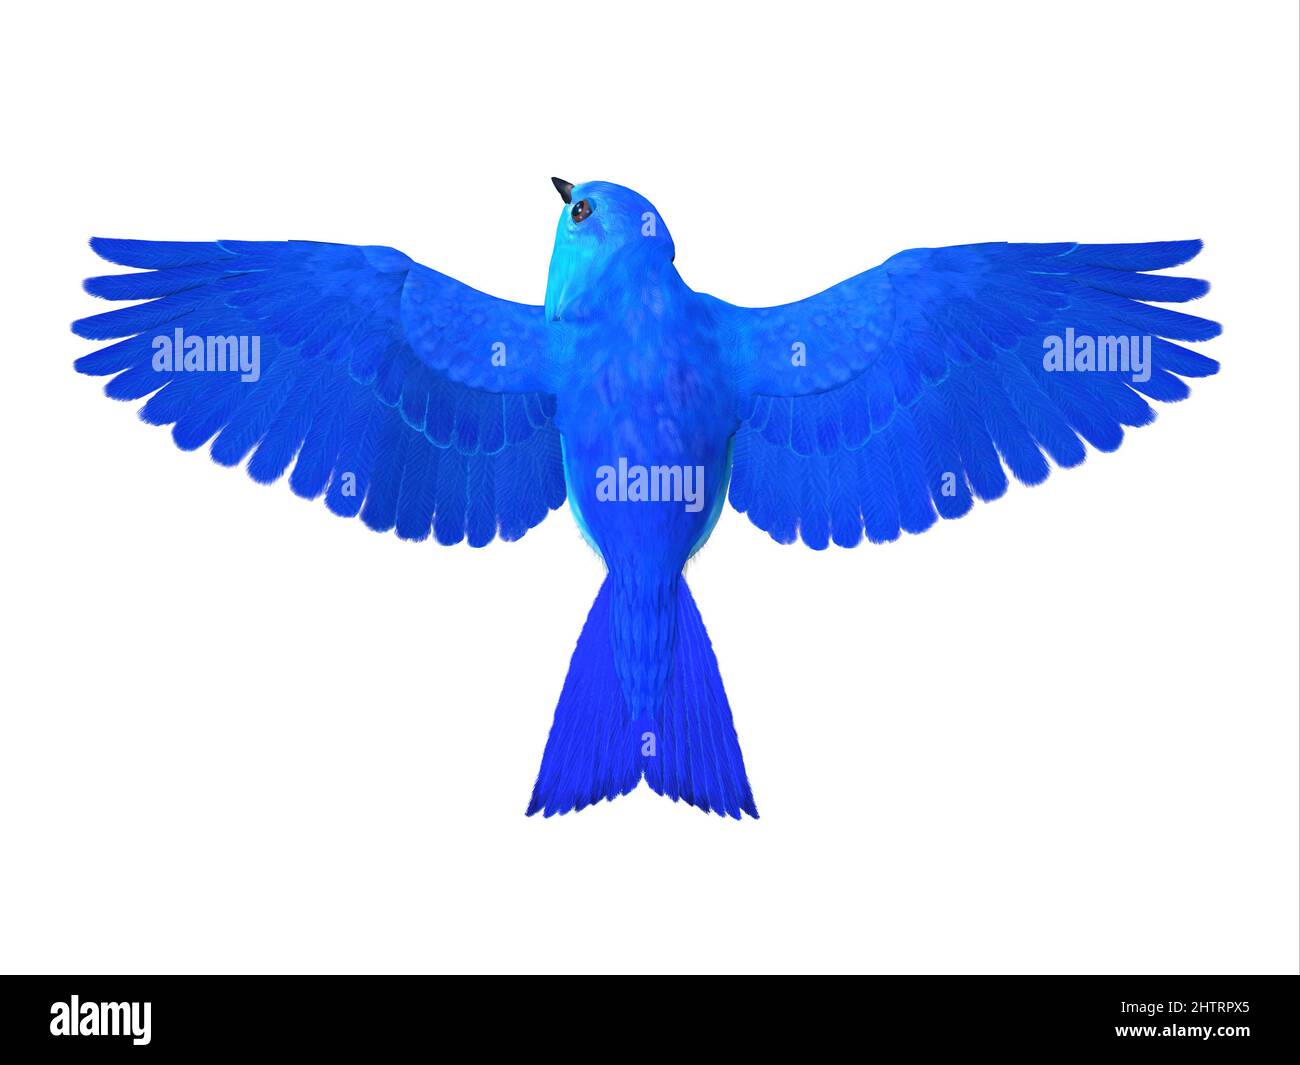 El Bluebird of Happiness es un símbolo de alegría y de mirar hacia los mejores tiempos en el futuro. Foto de stock